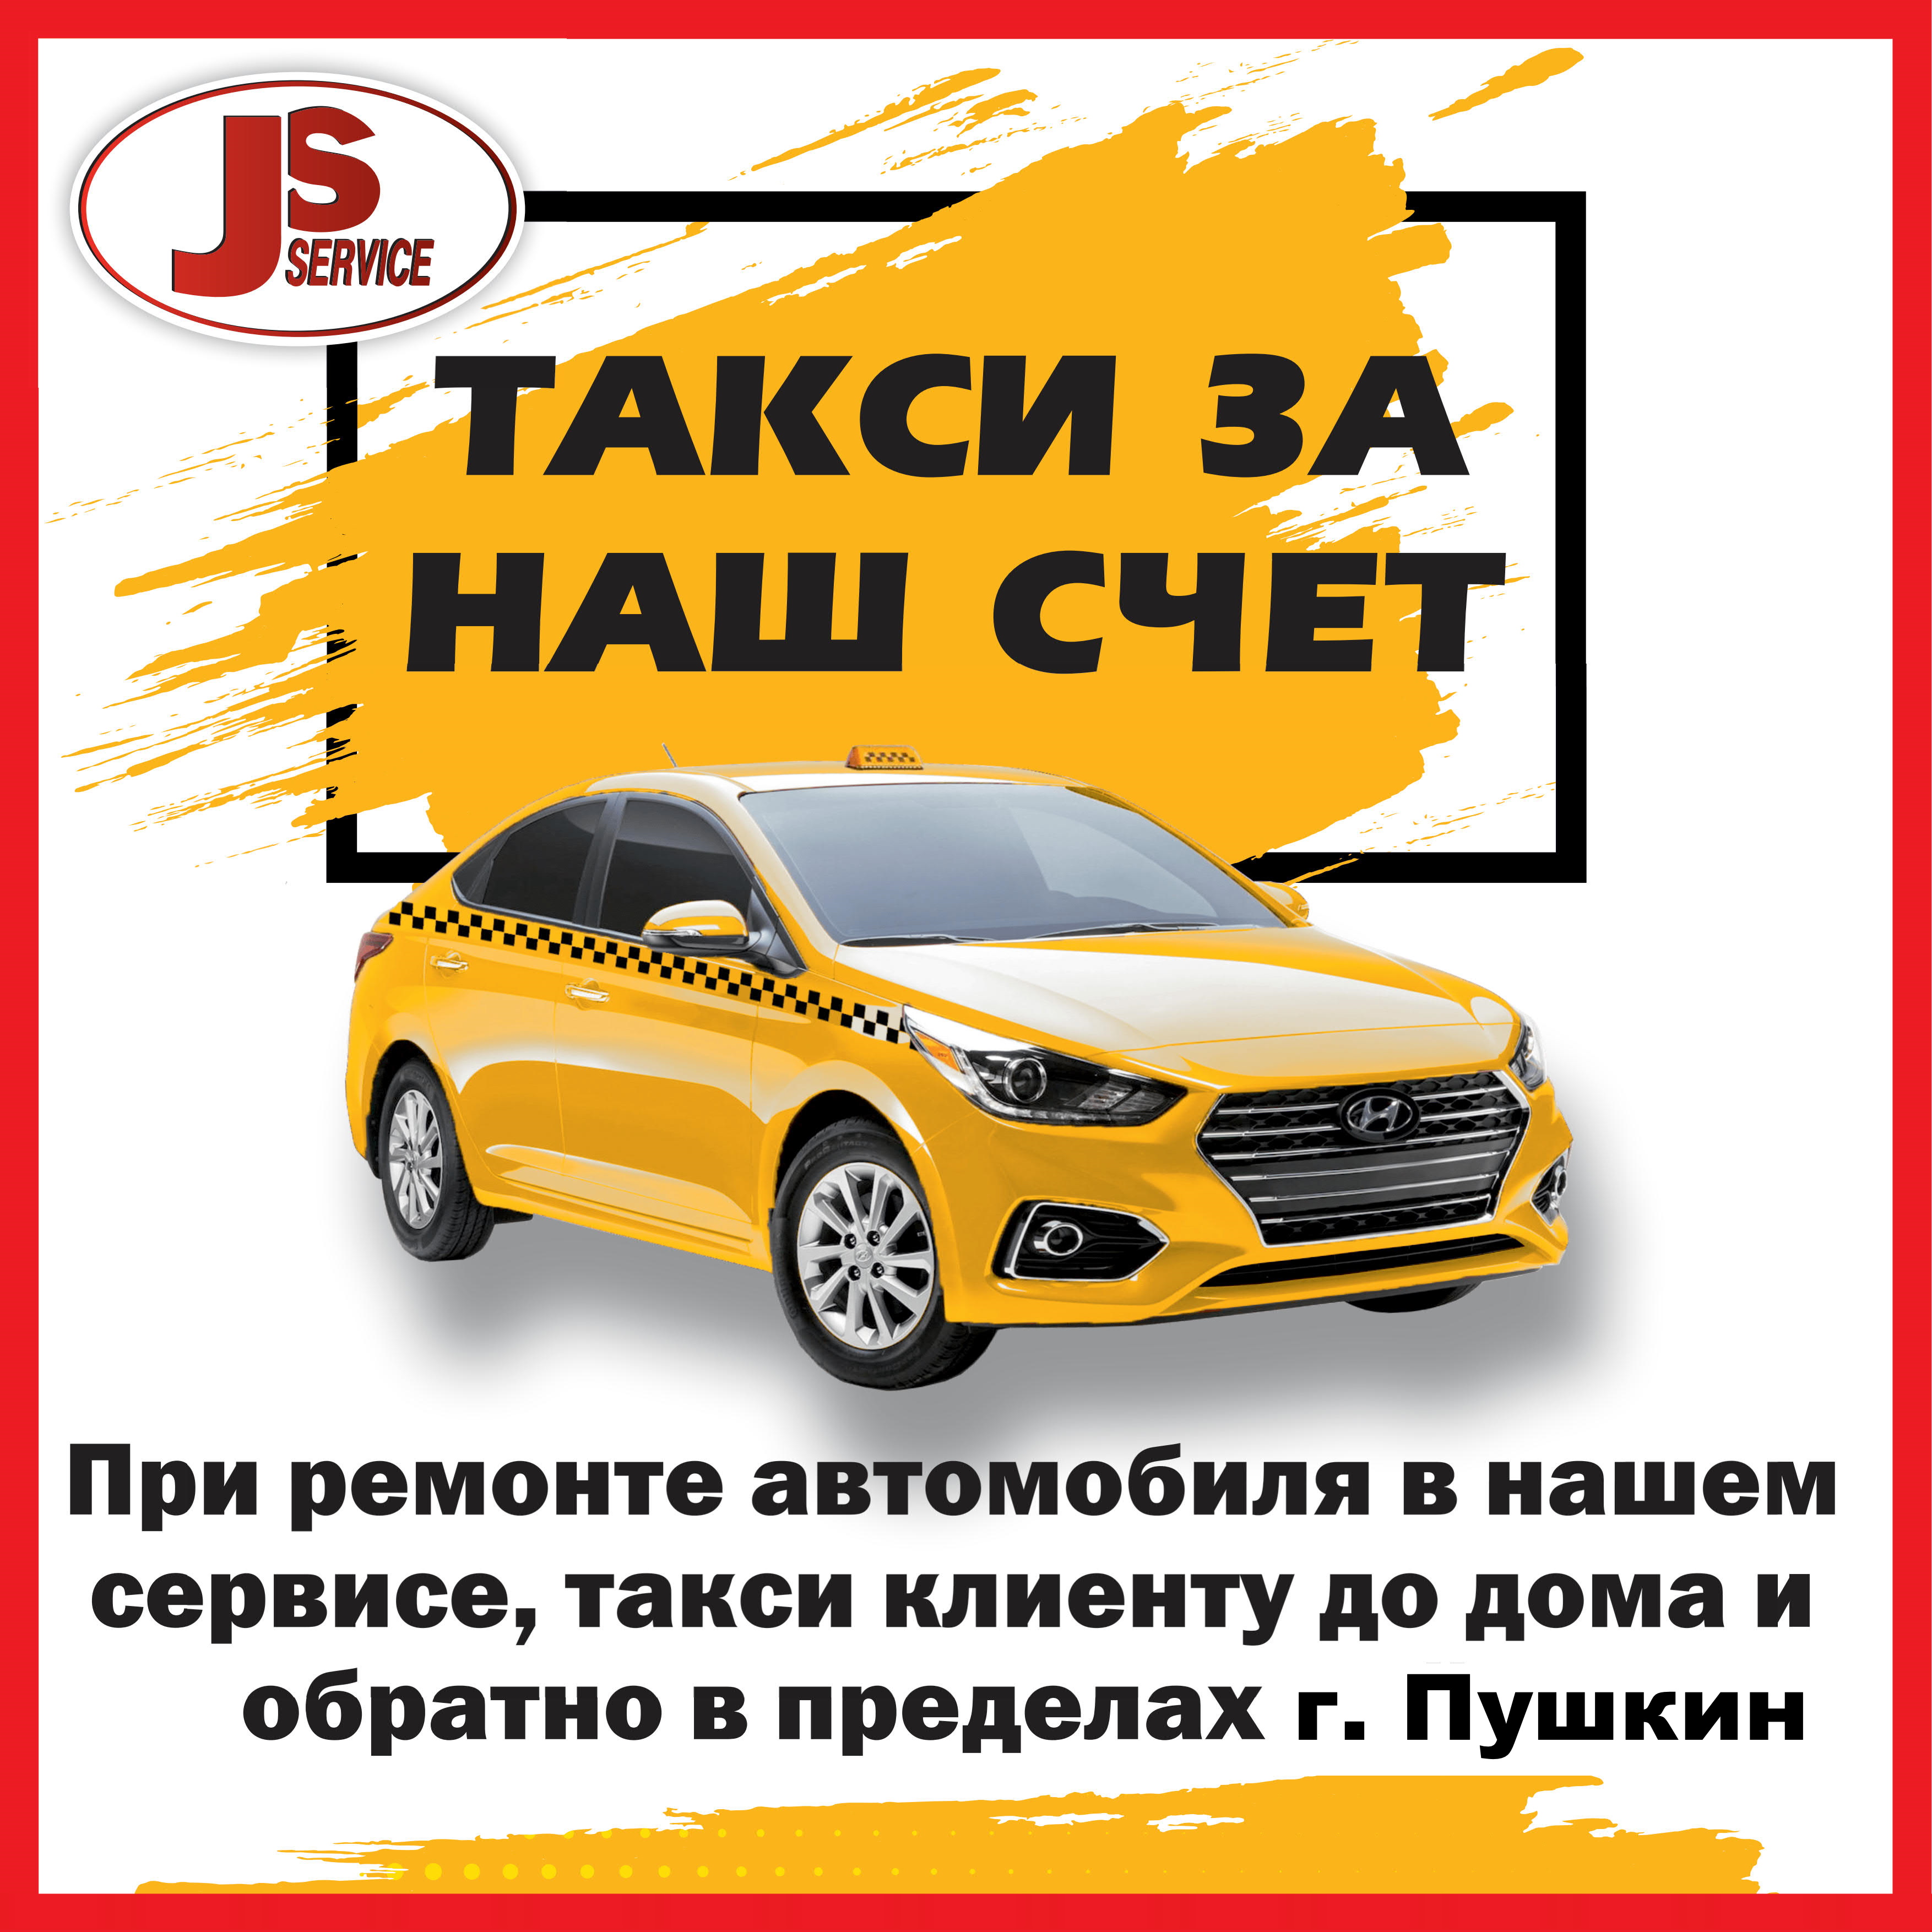 такси для клиентов бесплатно по Пушкину